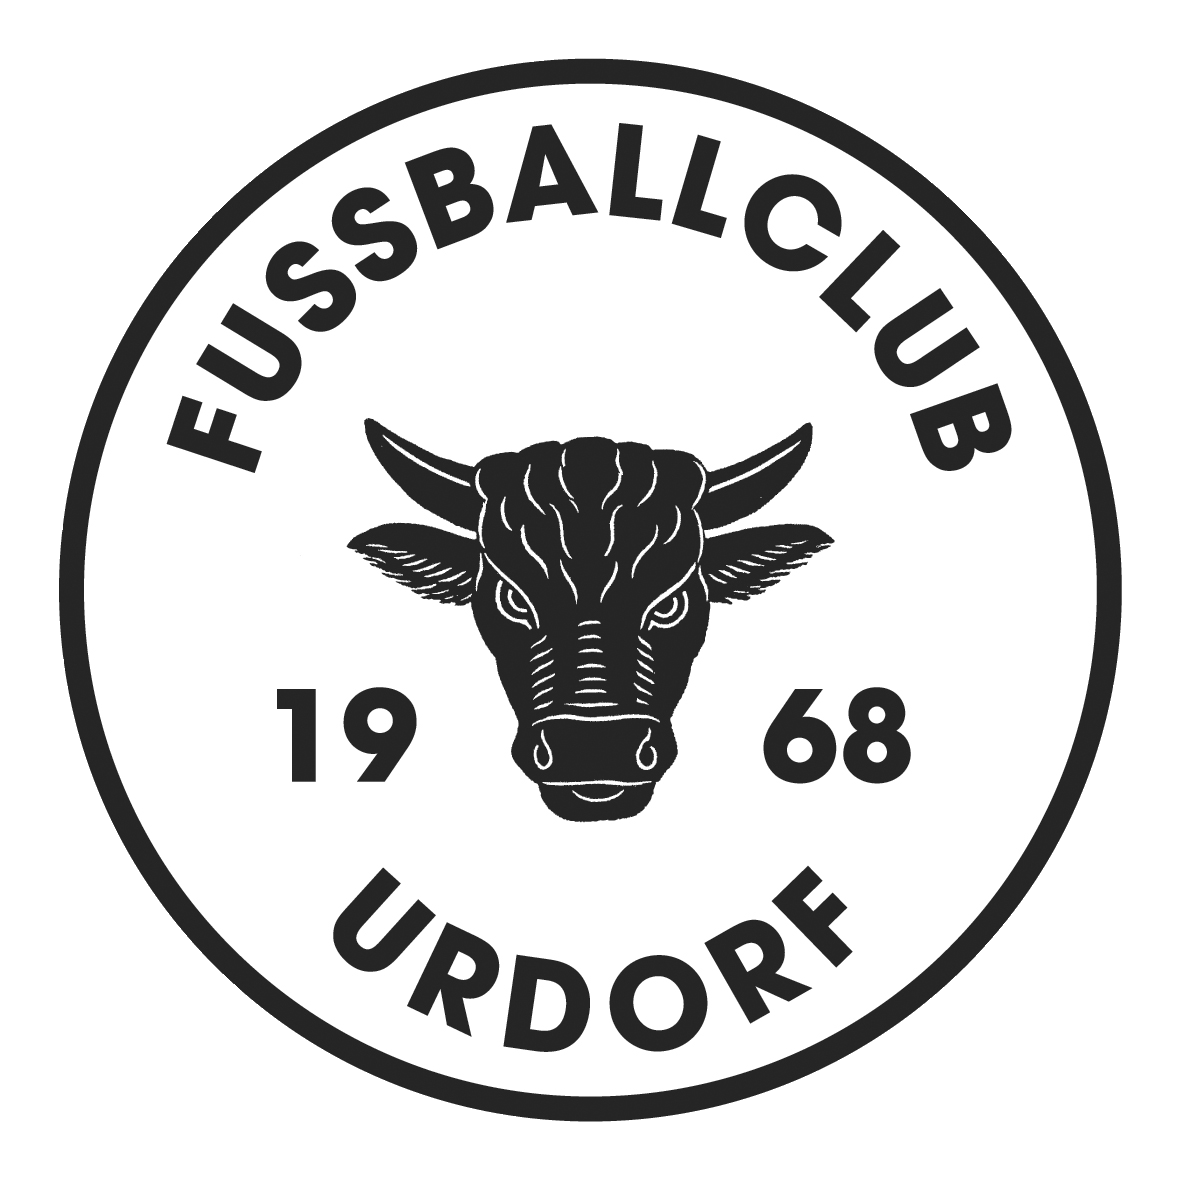 FC Urdorf